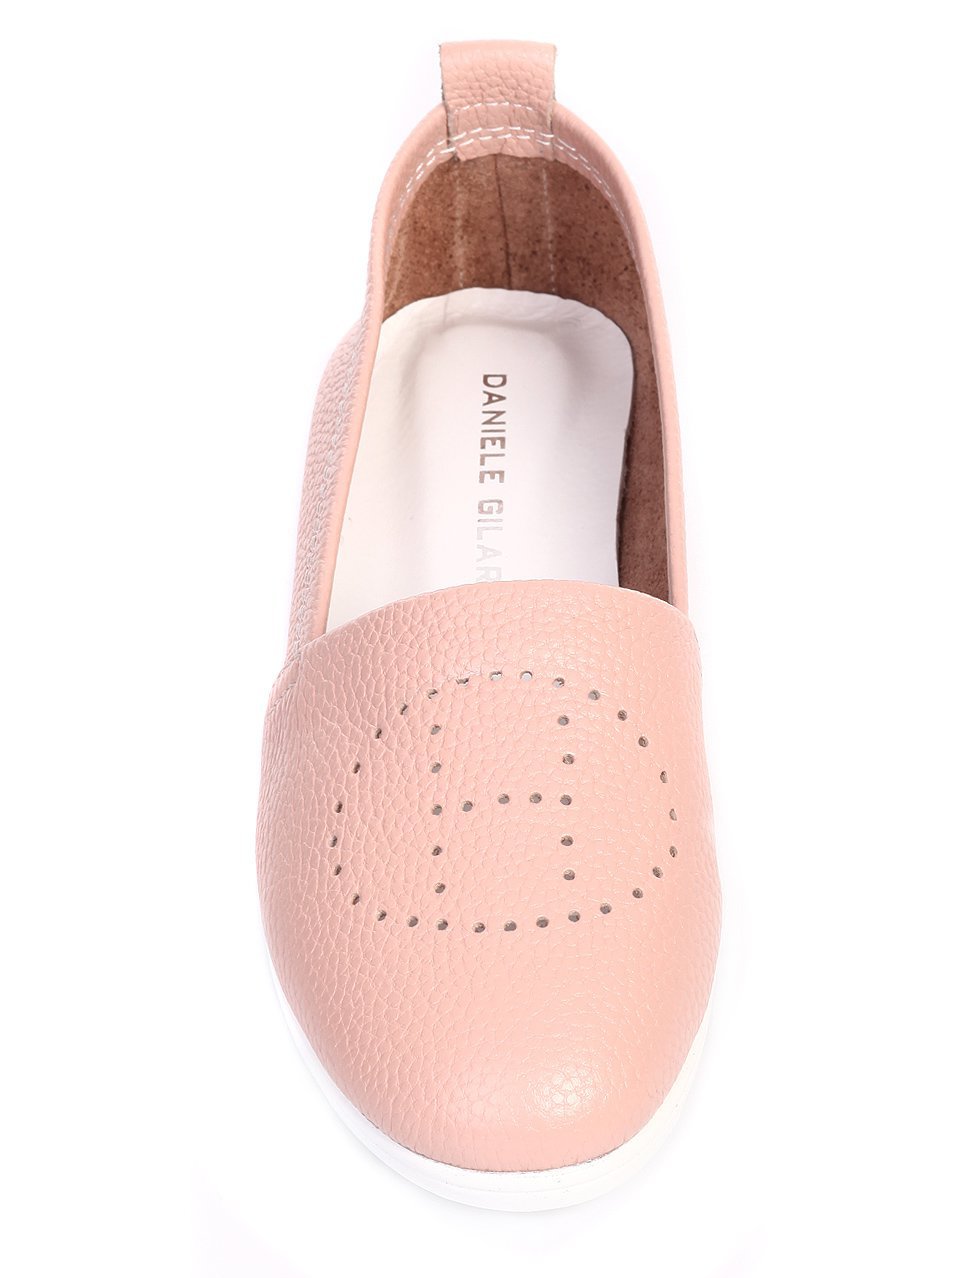 Ежедневни дамски обувки от естествена кожа 3AT-17573 pink